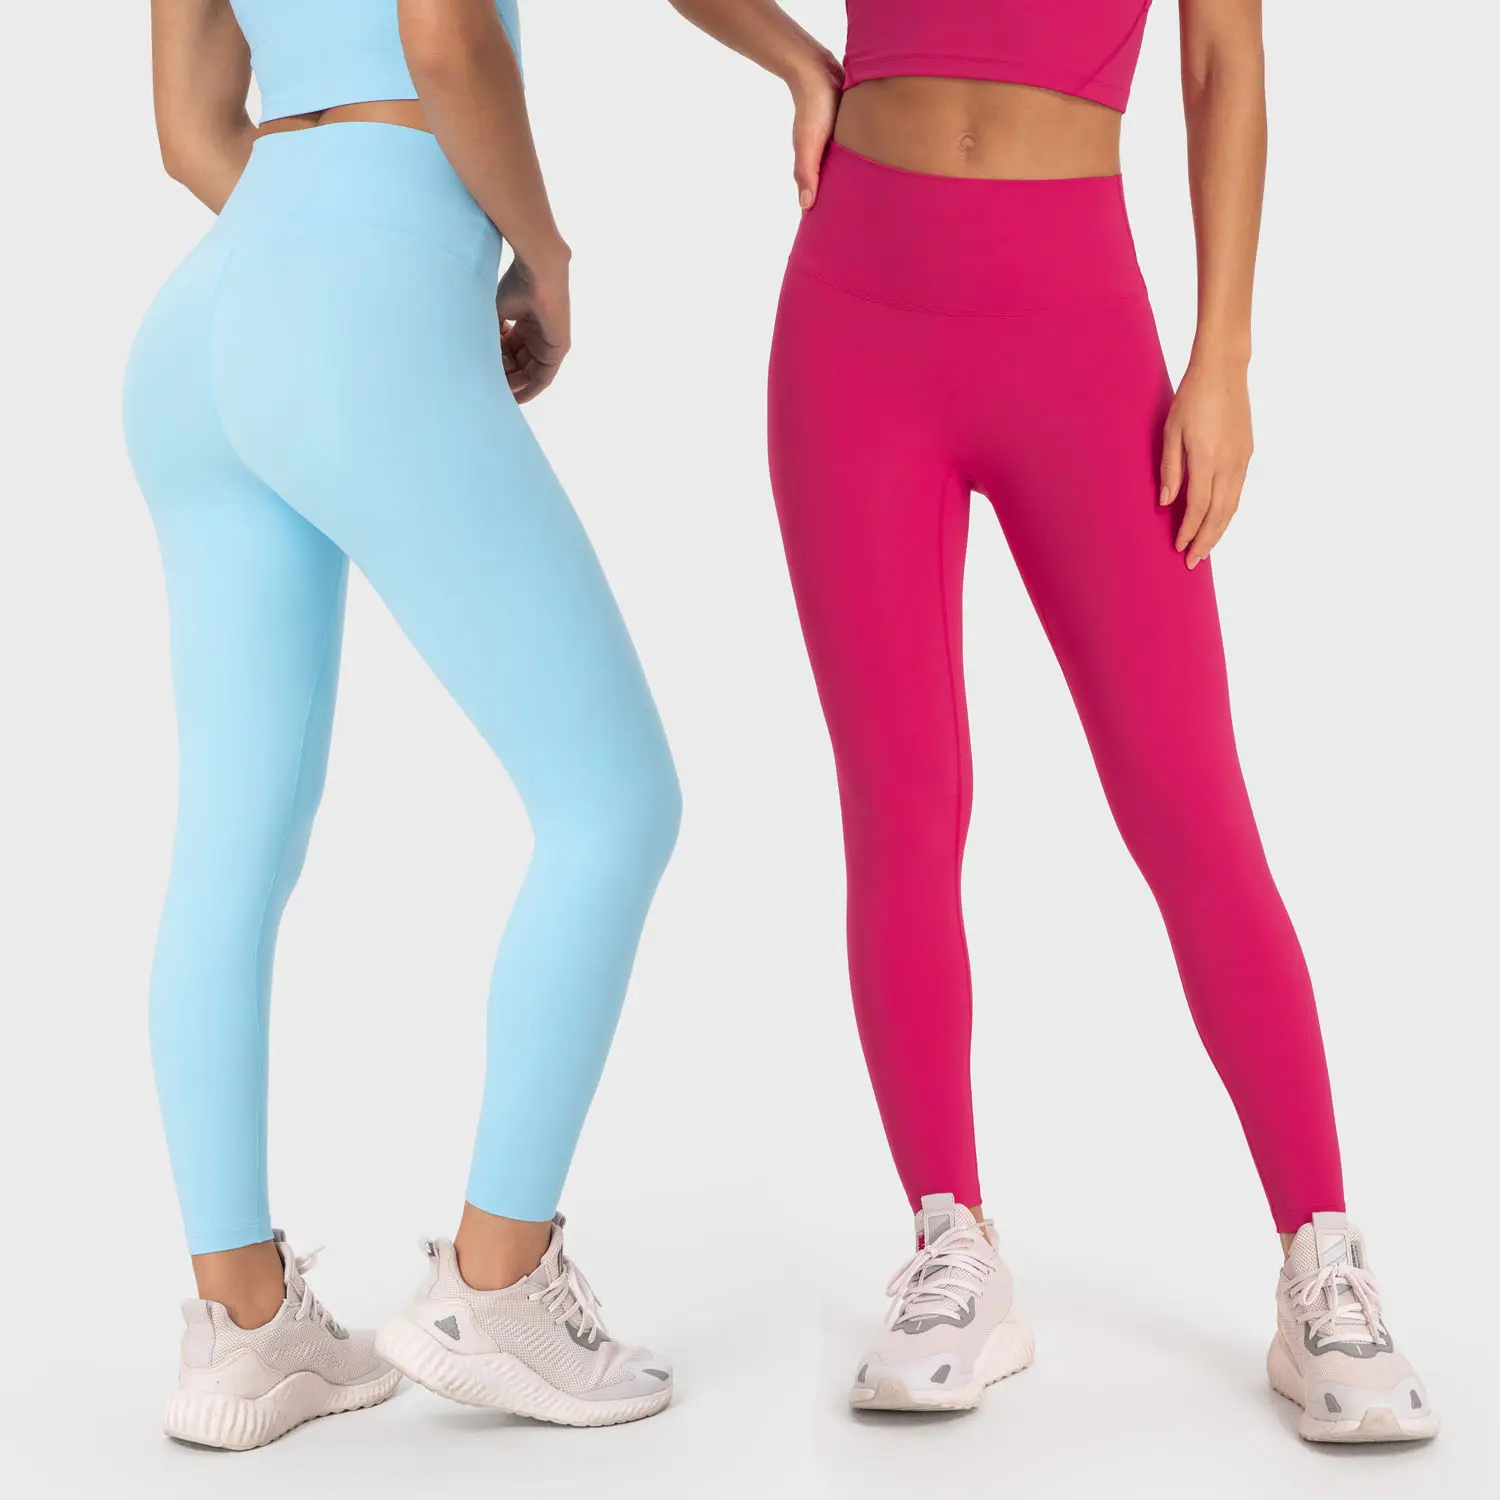 Logotipo personalizado alinear clásico en blanco de cintura alta de nailon Spandex suave mujeres pantalones gimnasio Fitness Leggings para entrenamiento Yoga